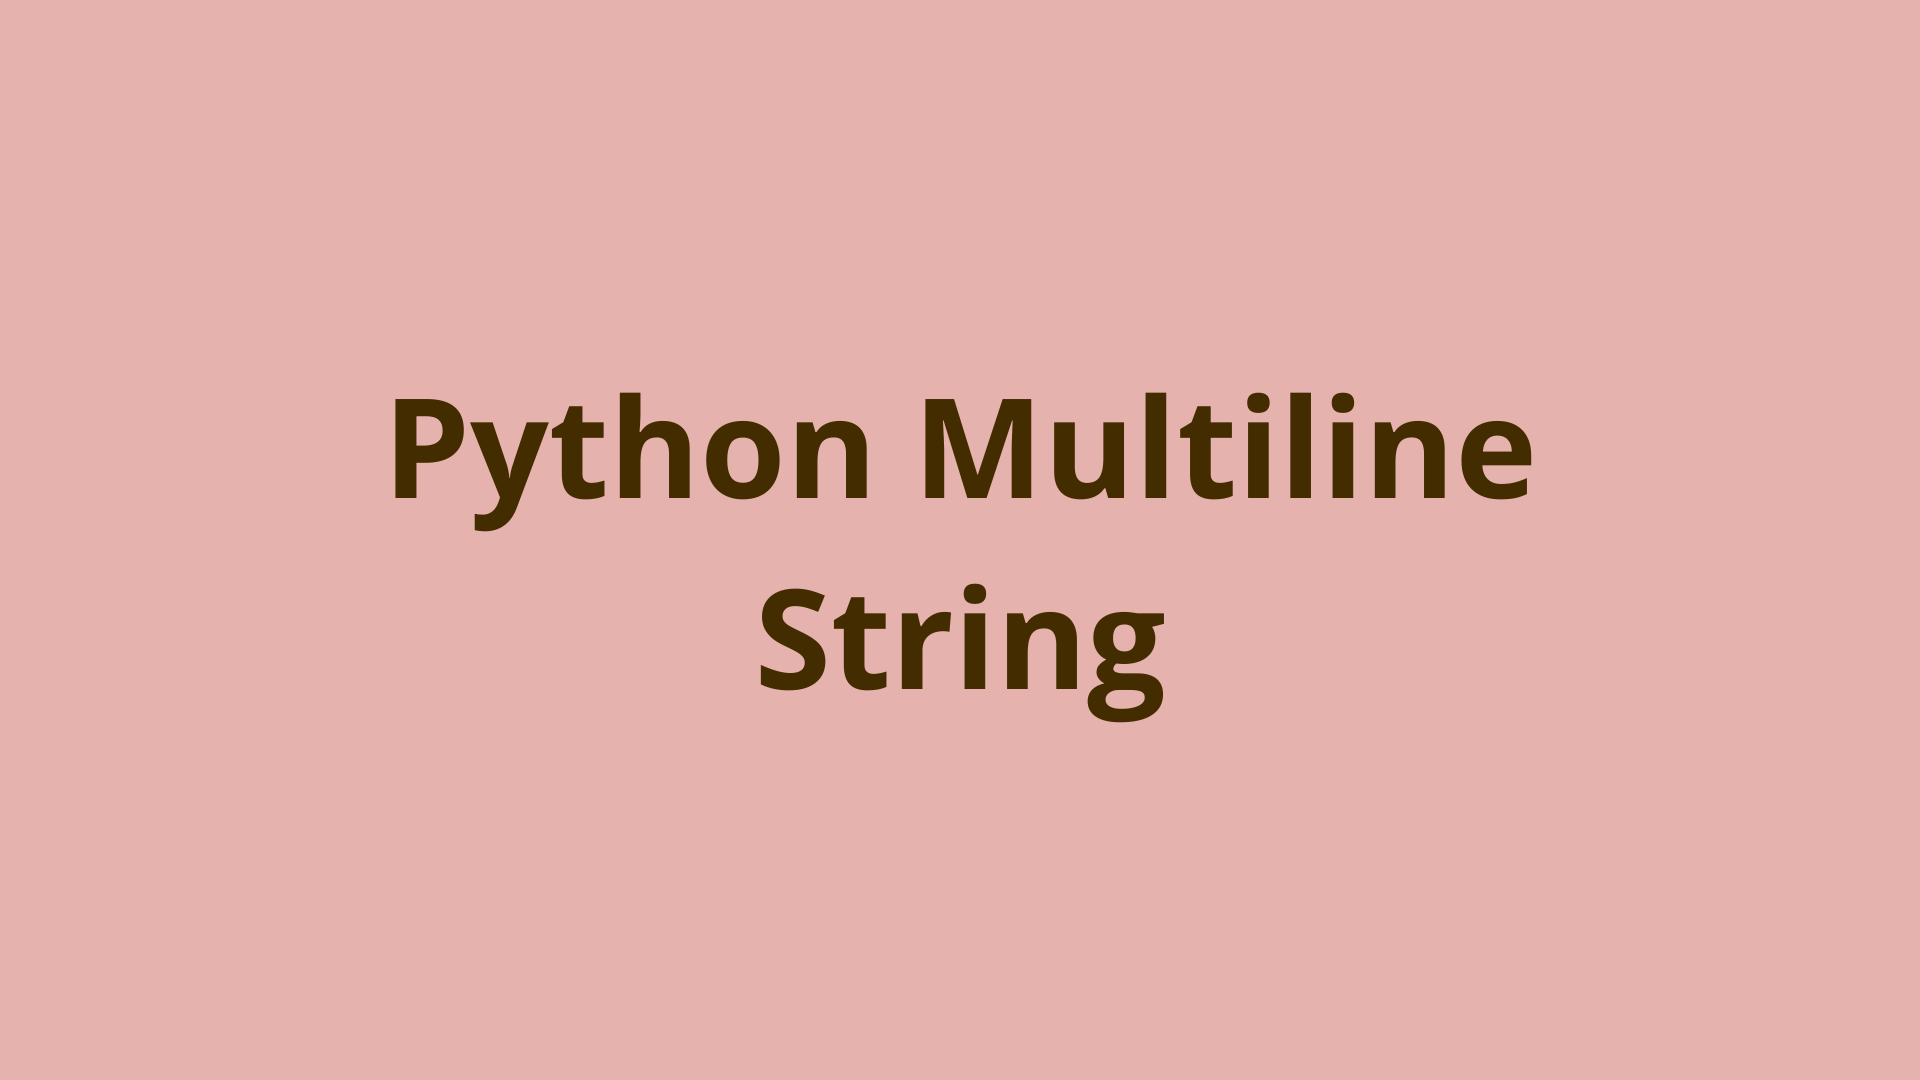 Image of Python Multiline String